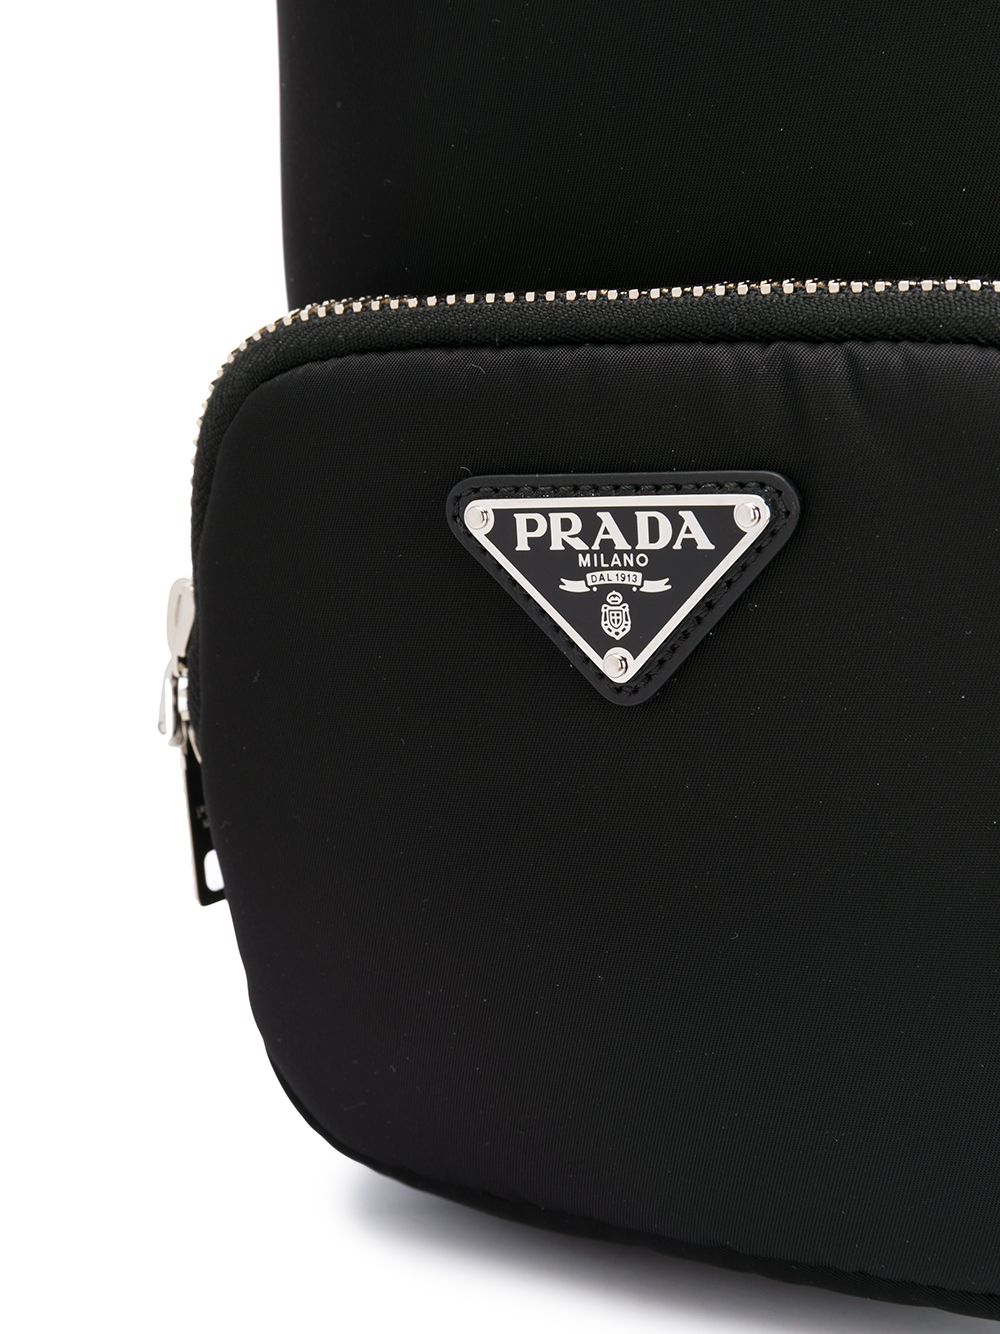 фото Prada сумка-ведро со шнурком